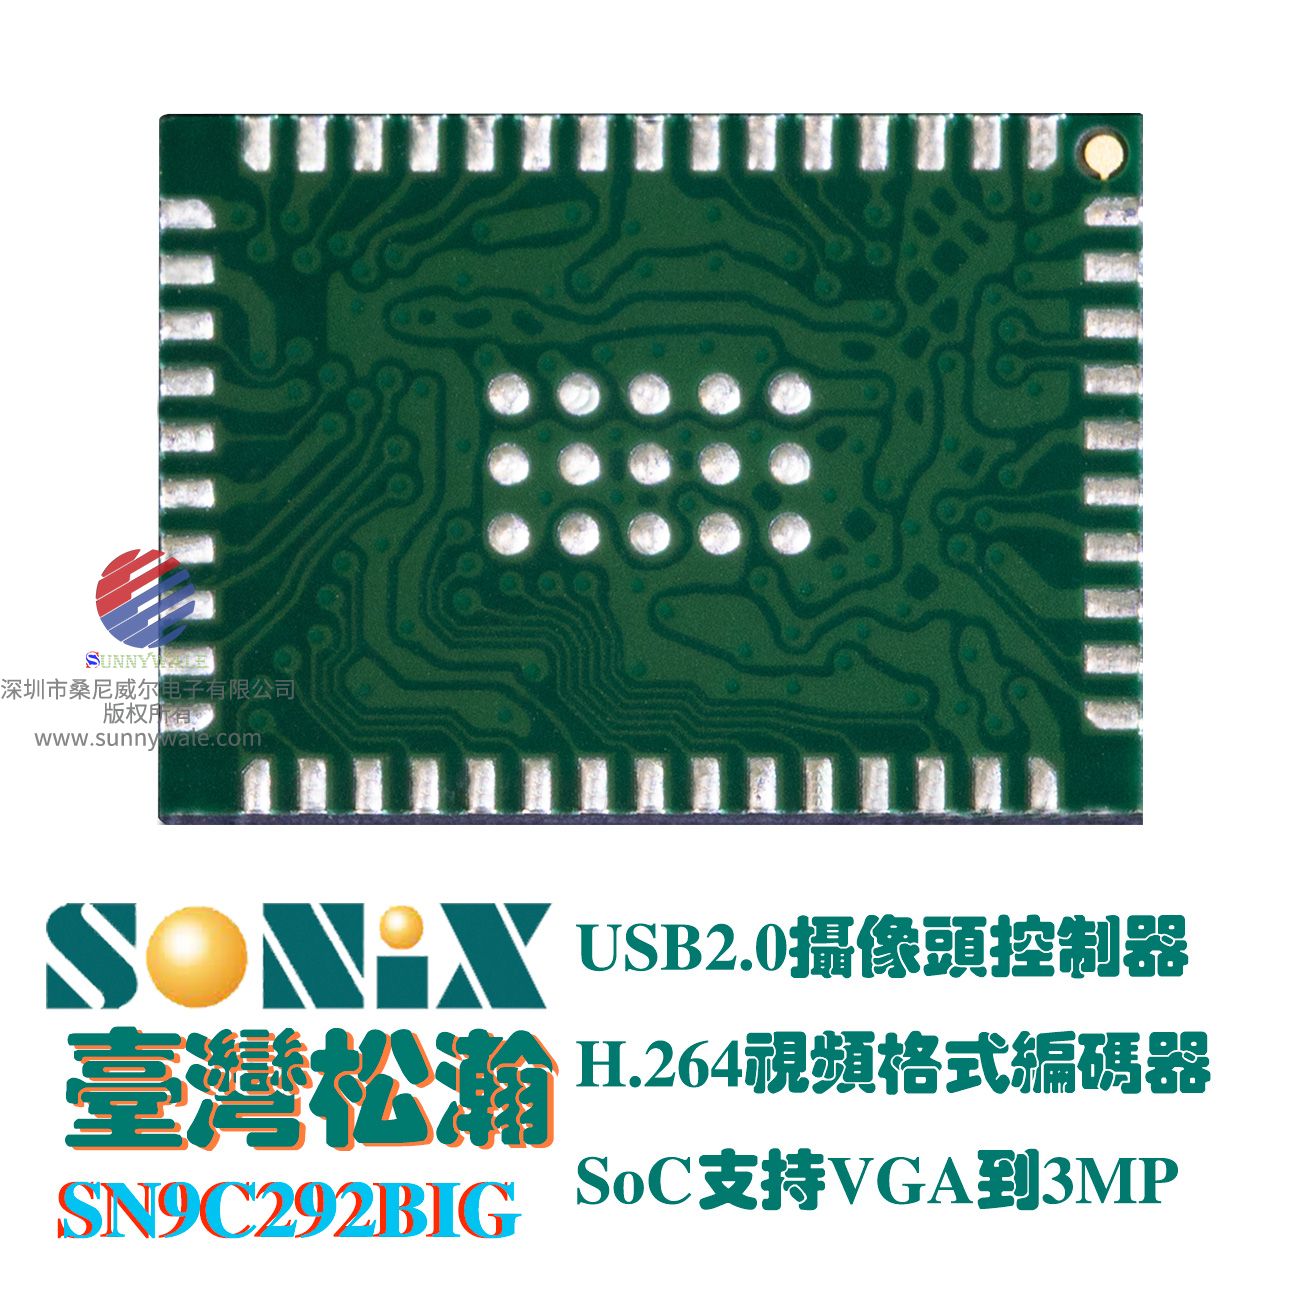 松翰SONIX SN9C292B方案商 ，经销商 , H.264视频编码器，300万像素USB2.0摄像头视频控制器，SoC片上系统，支持VGA to 3MP视频编码引擎